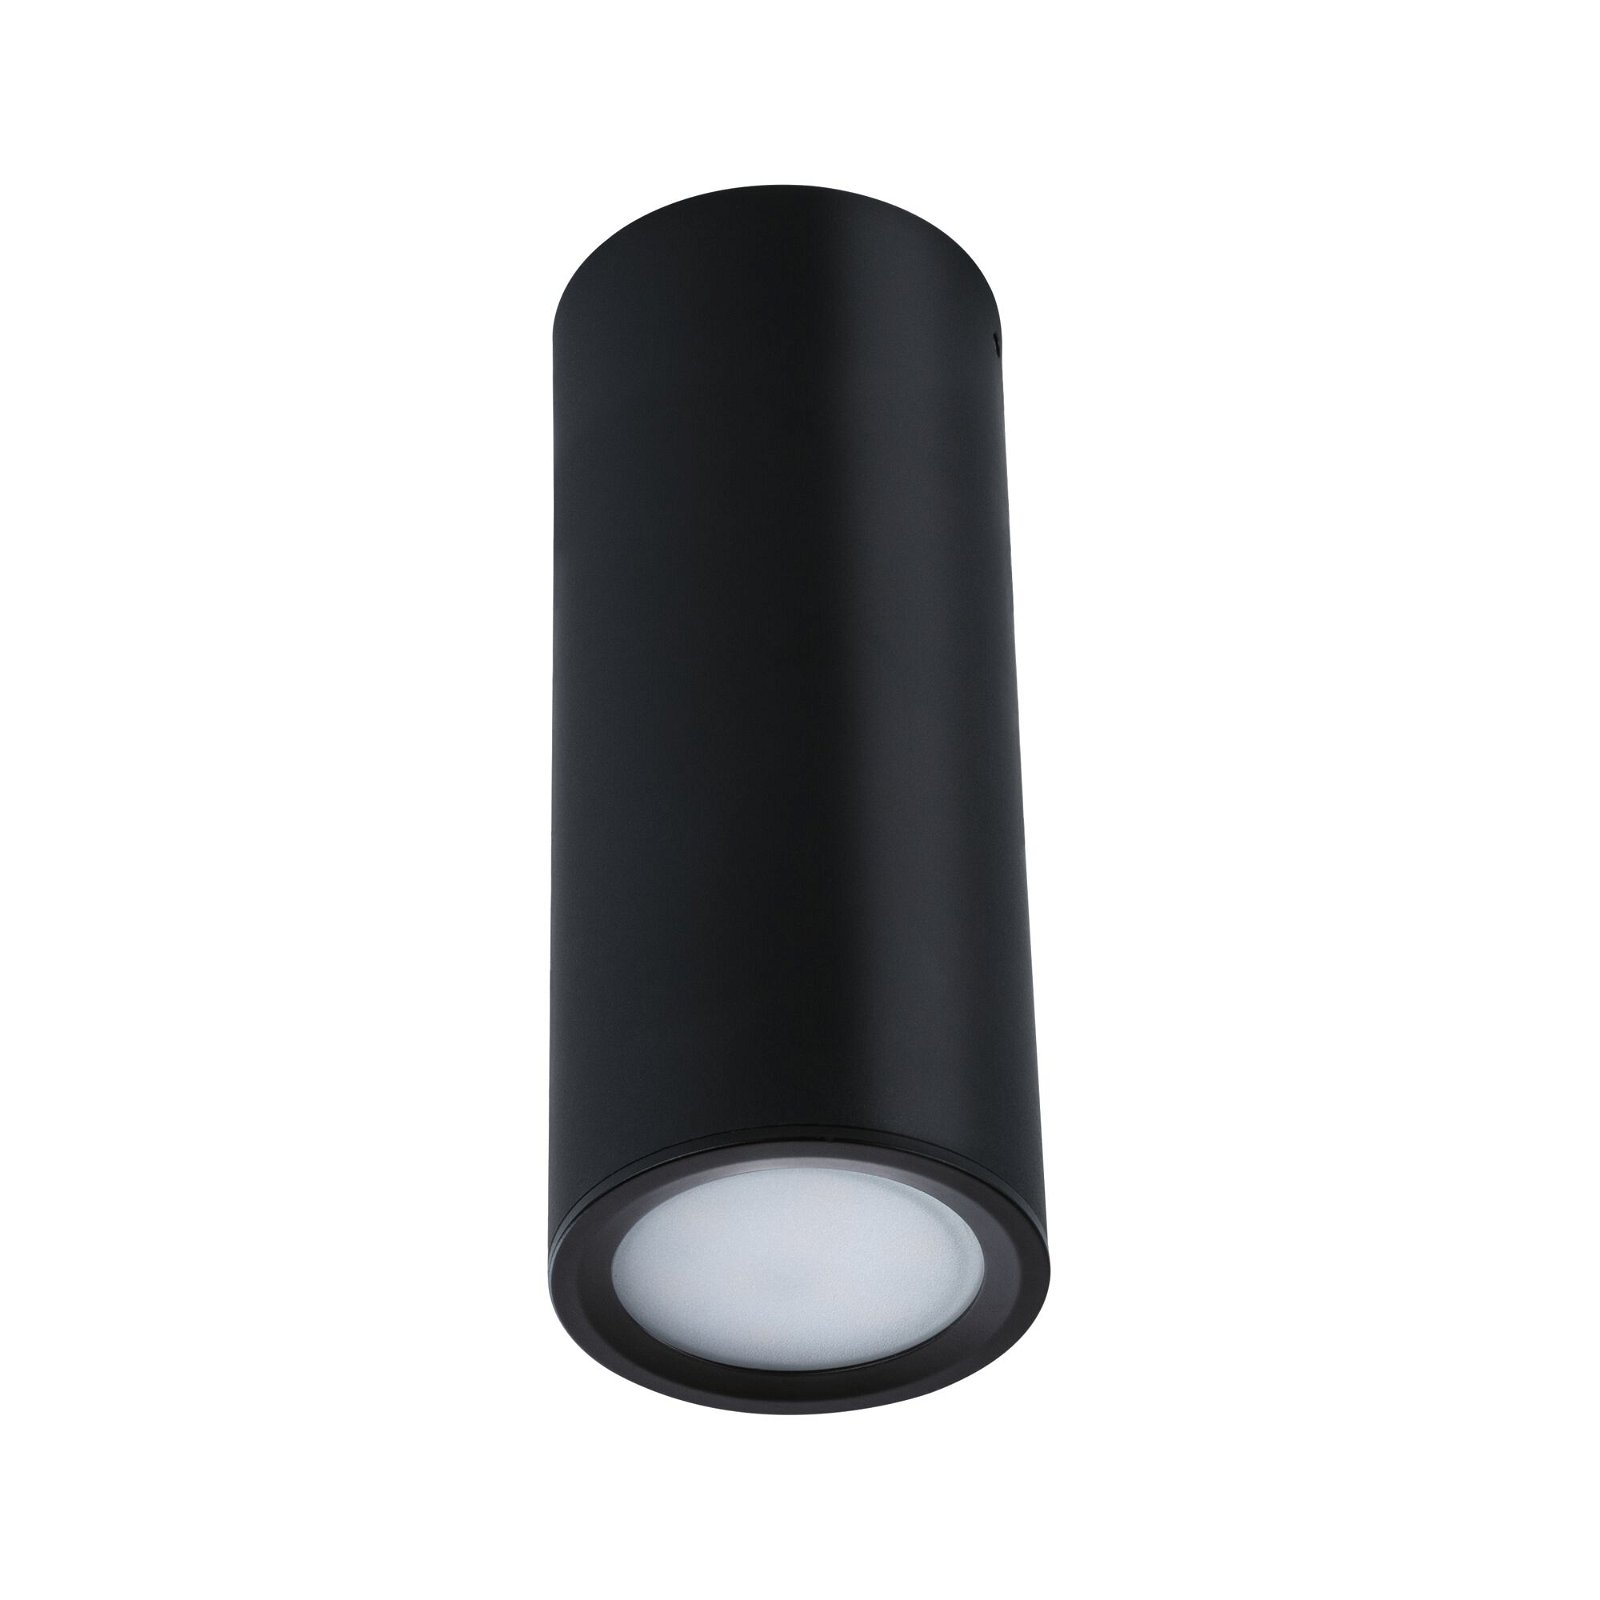 LED Ceiling luminaire 3-Step-Dim Barrel 2700K 470lm 230V 6W dimmable Black matt